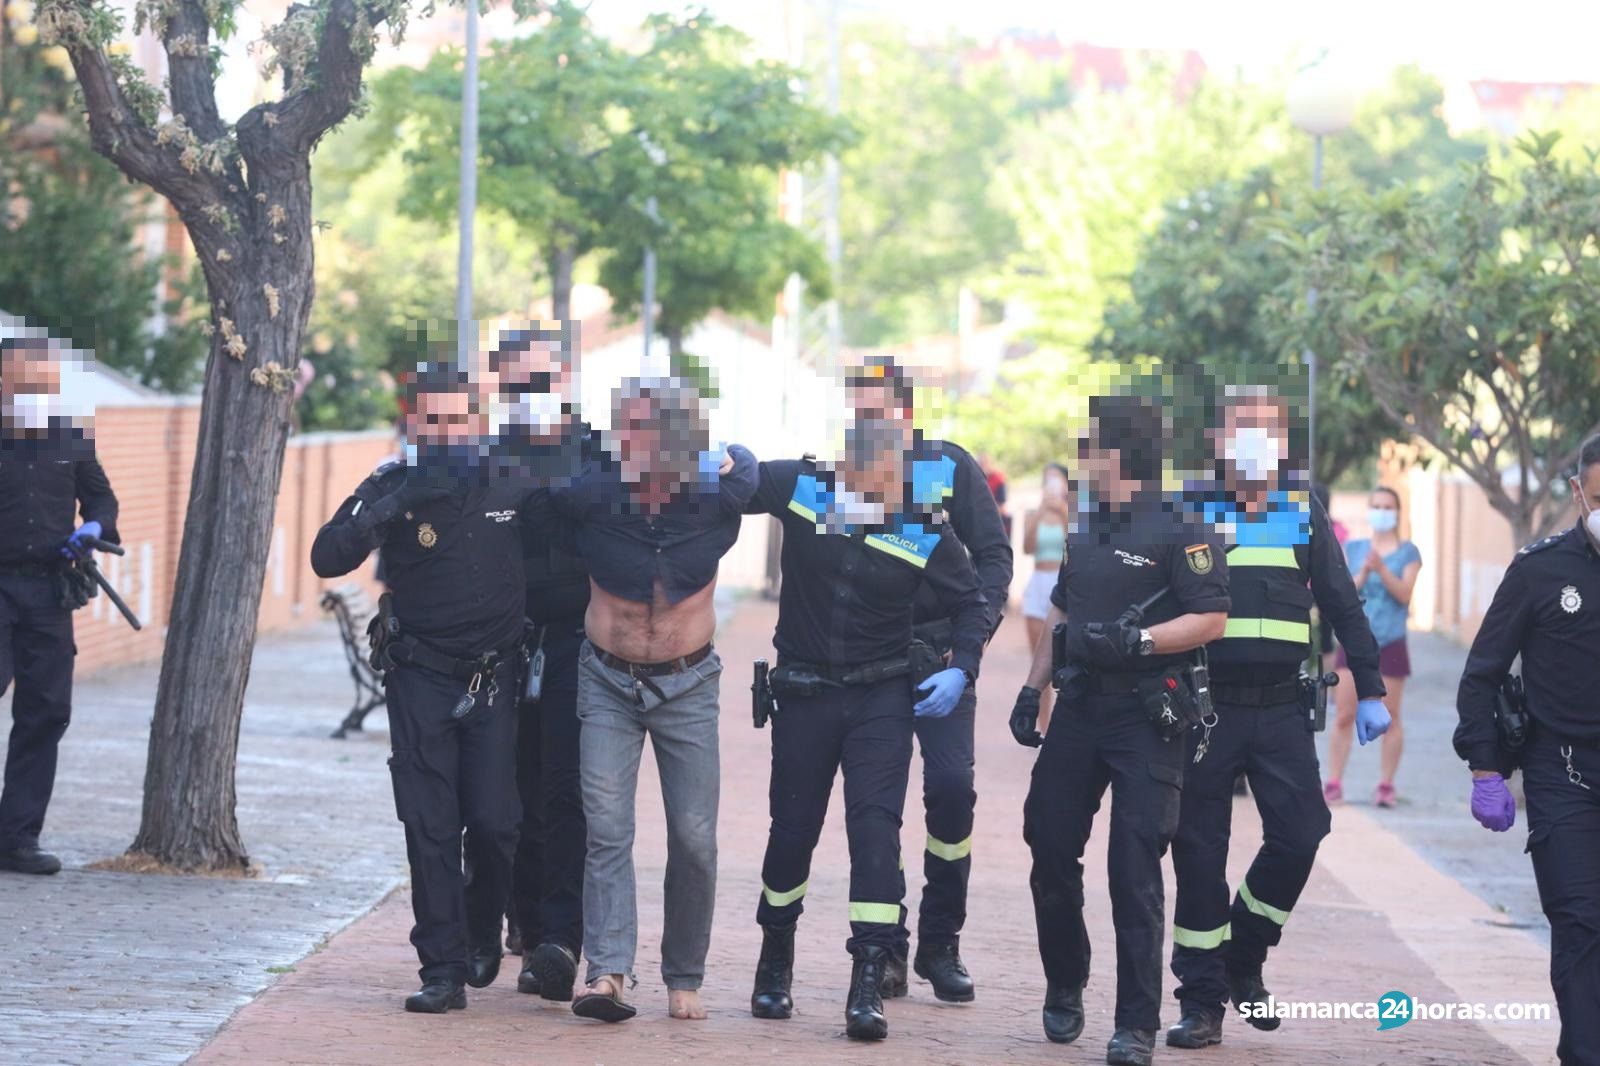  Policia detiene al vecino argentino de Lasalle 4 